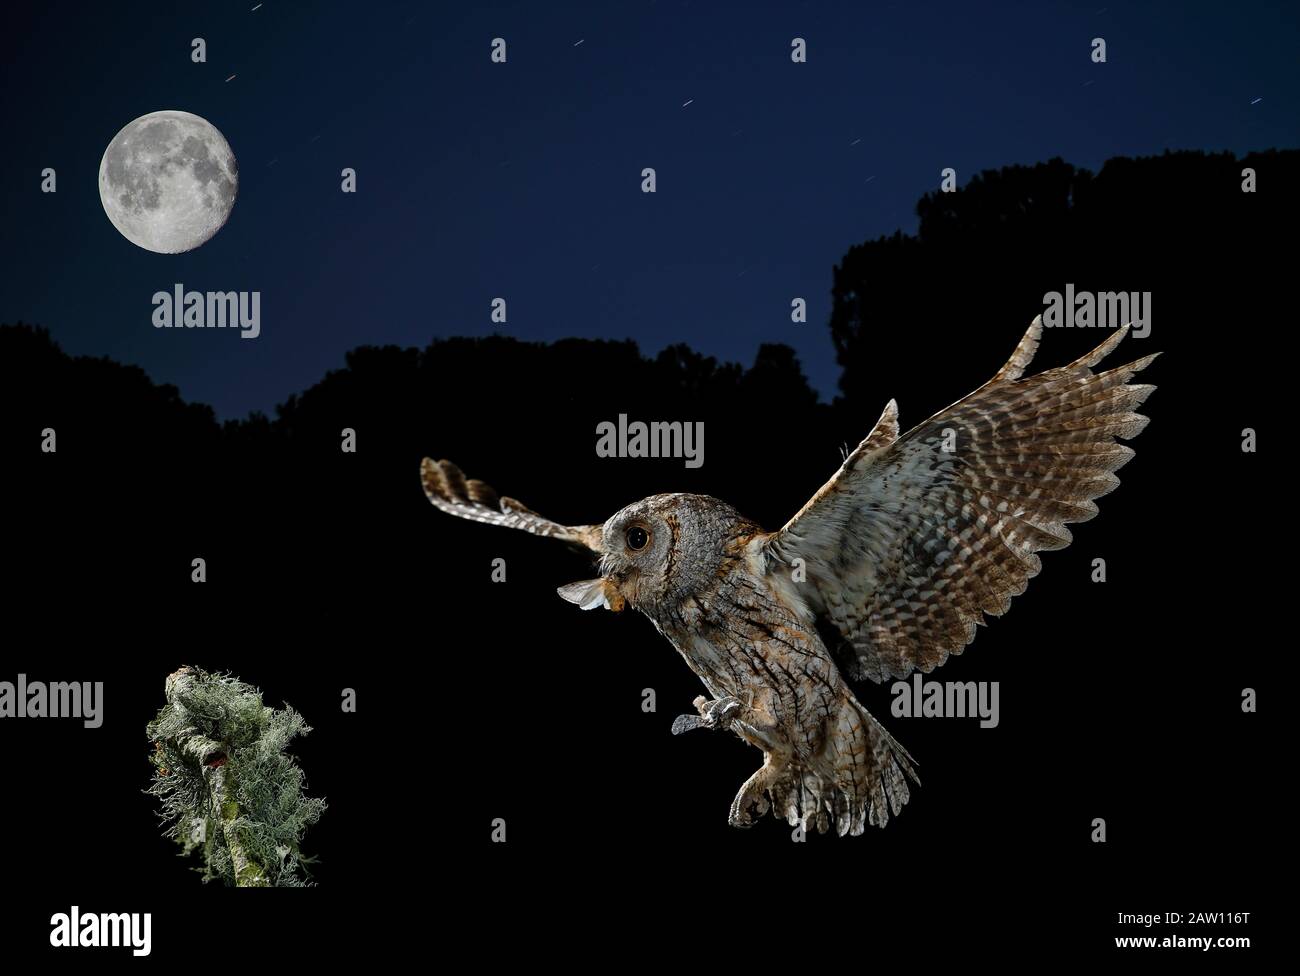 Chouette Des Scopes Eurasiens (Otus Scops). Adulte volant la nuit avec proie et lune en vue. Salamanque, Castilla Y León, Espagne Banque D'Images